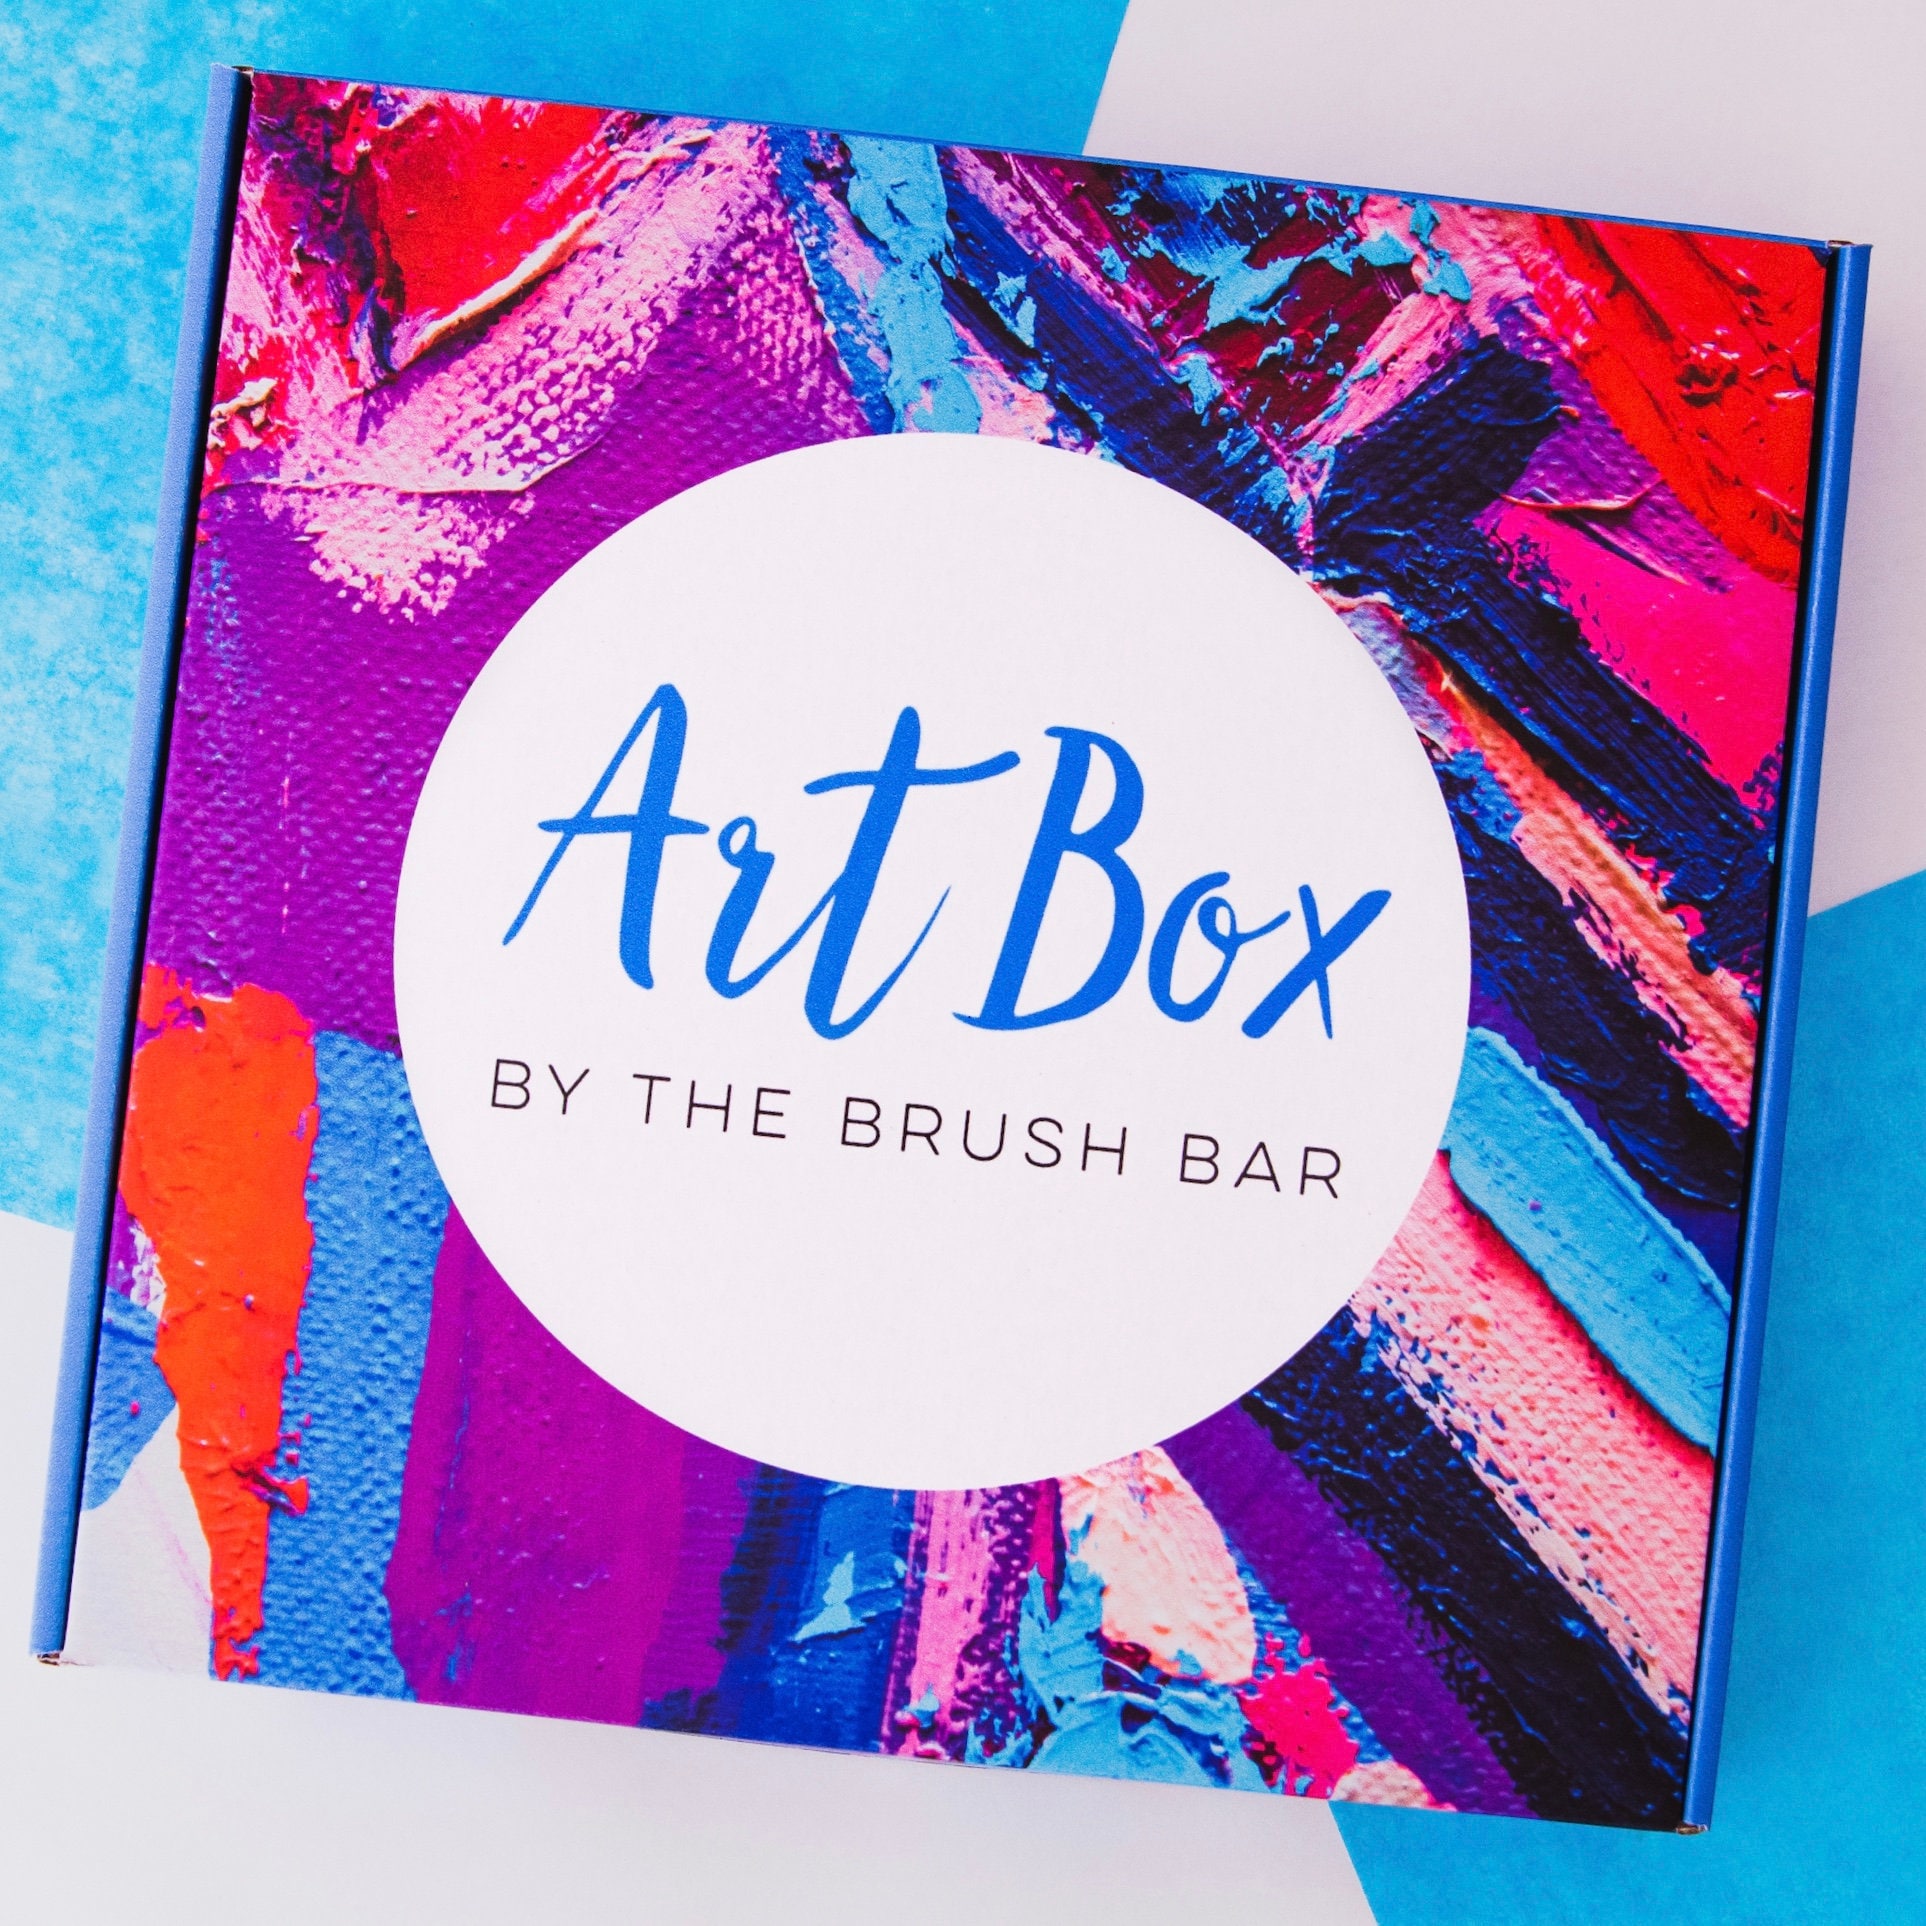 Paint Party Boxes (read descriptions below) – Starry Nite Studios